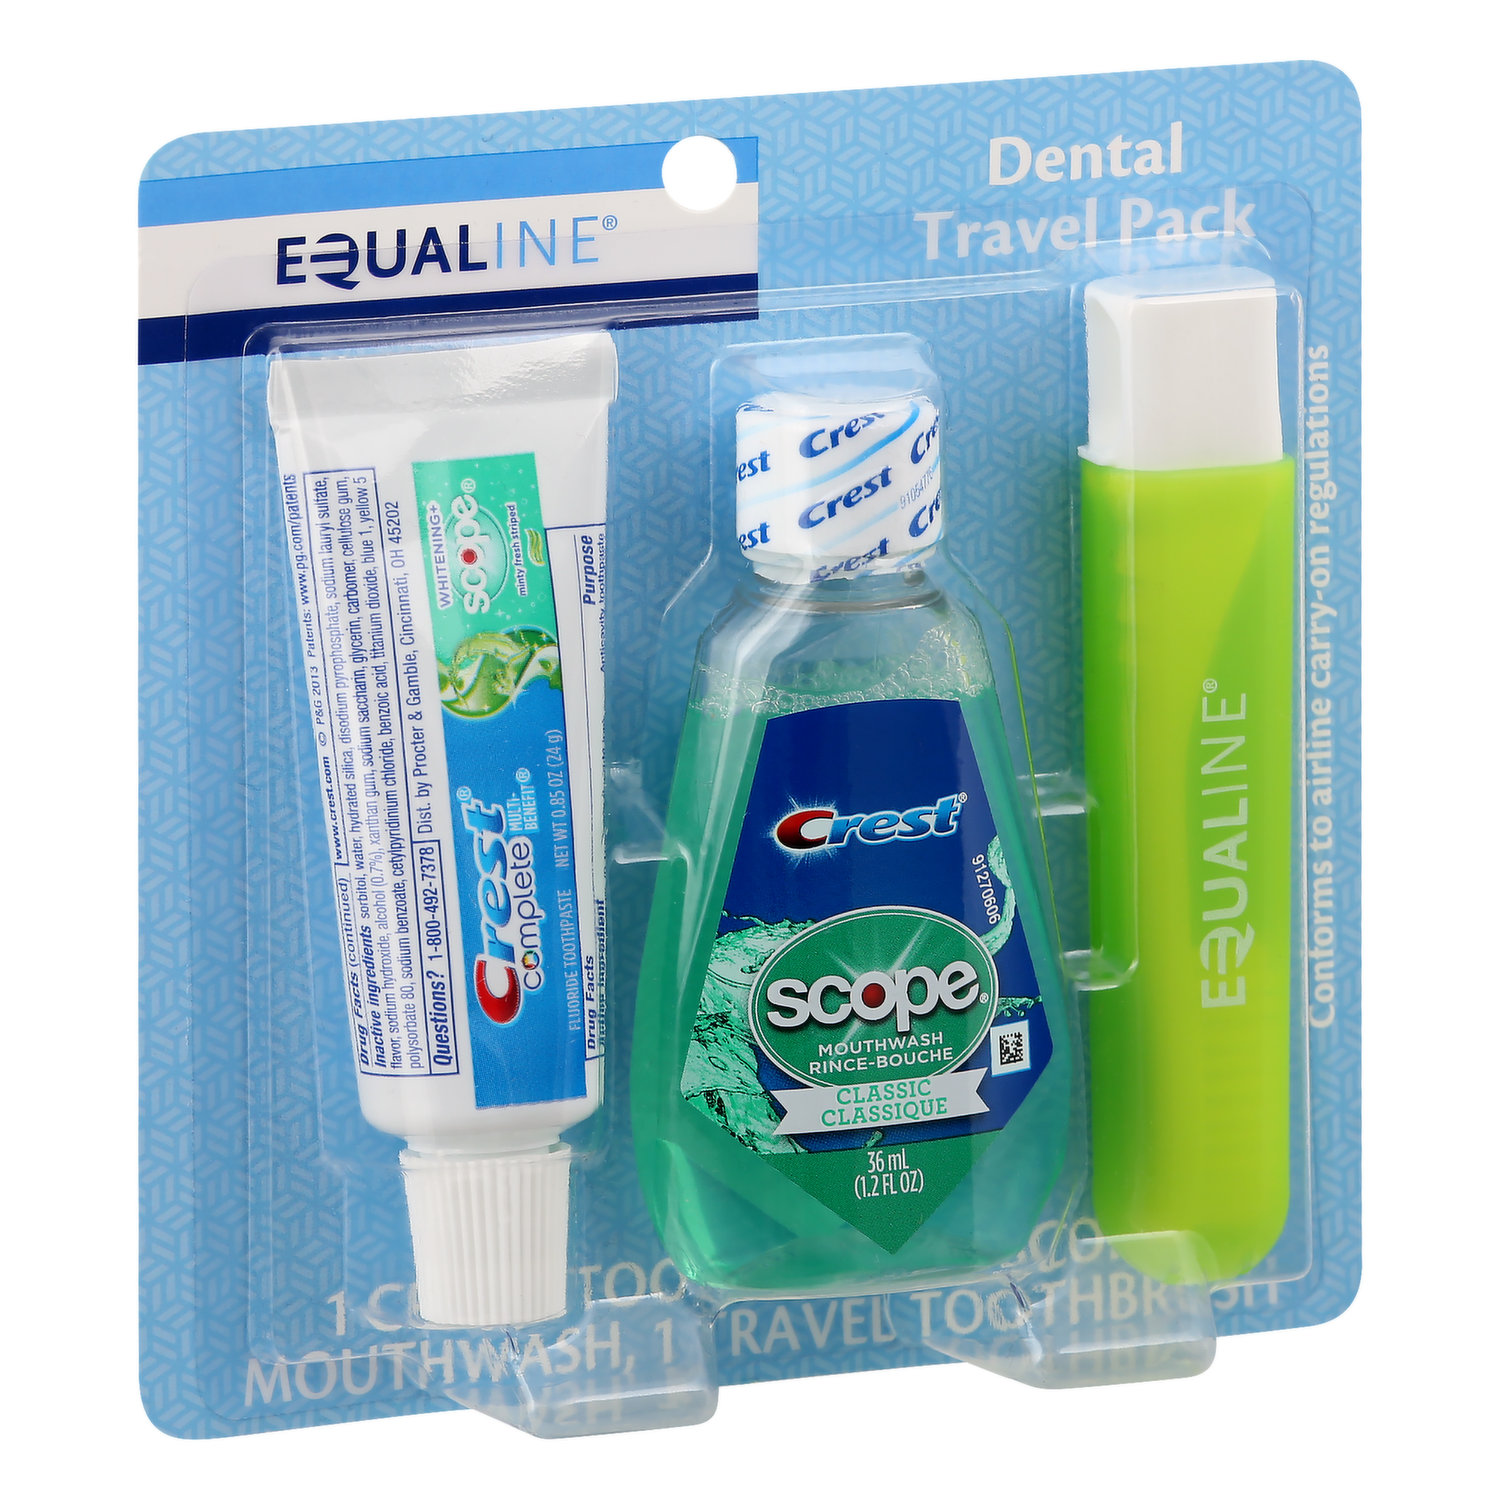 Equaline Dental Travel Pack (Each)